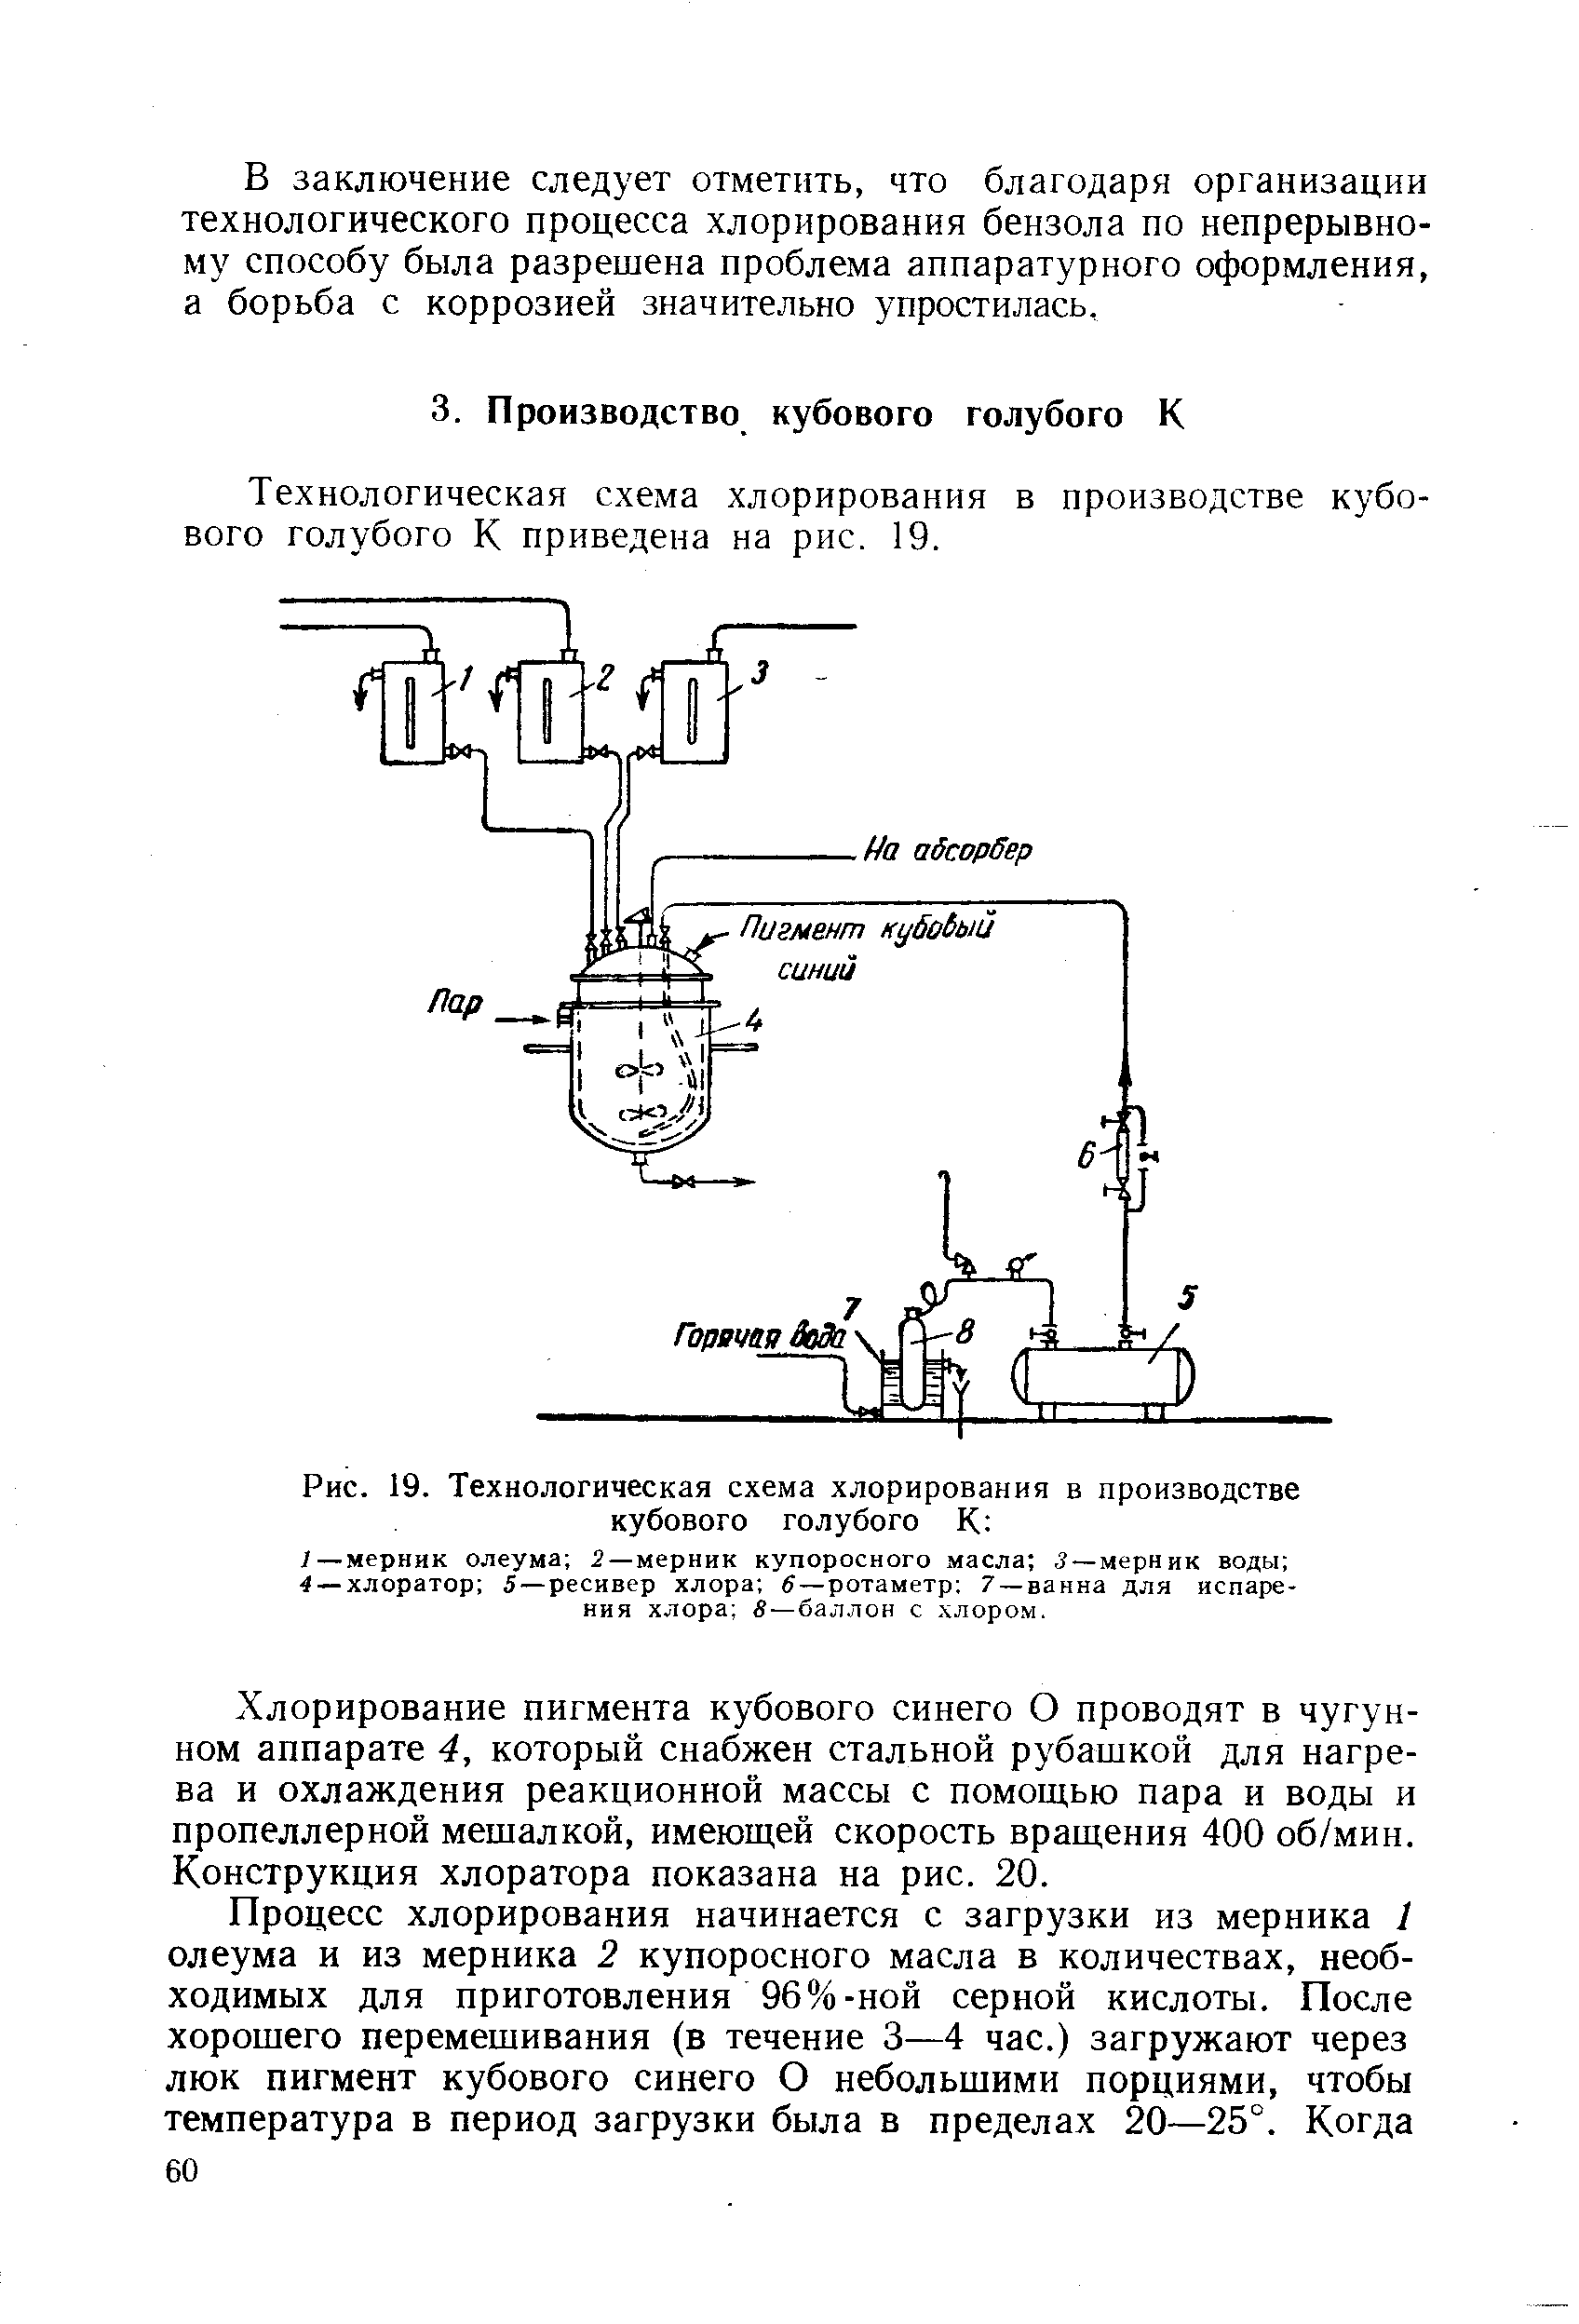 Технологическая схема хлорирования в производстве кубового голубого К приведена на рис. 19.